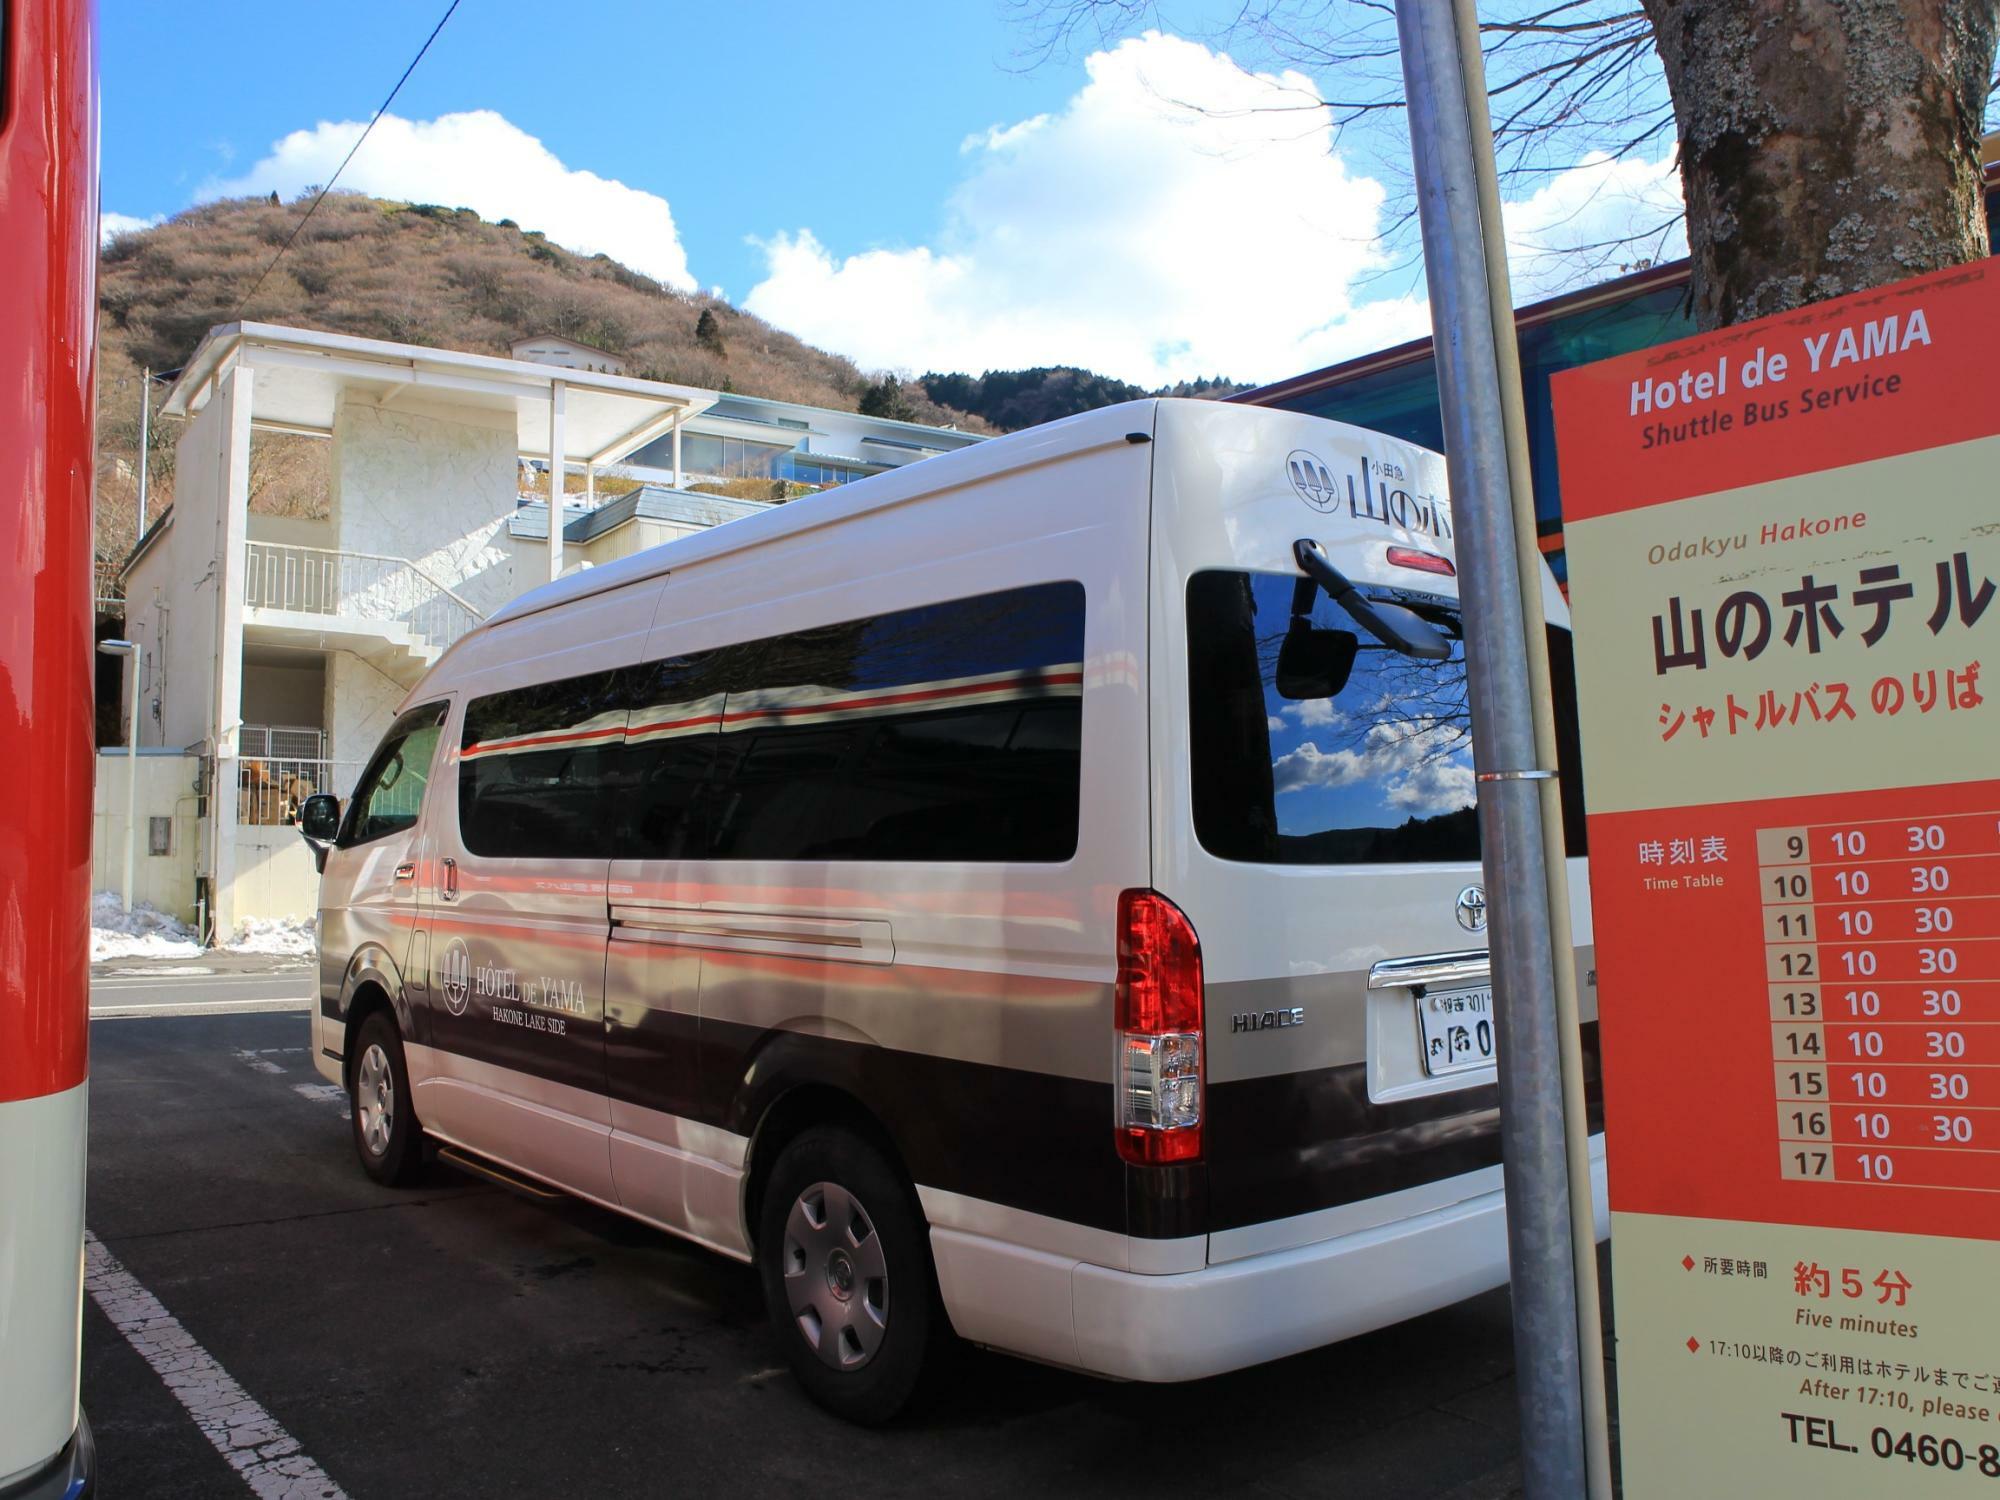 元箱根港と小田急 山のホテルを結ぶシャトルバス